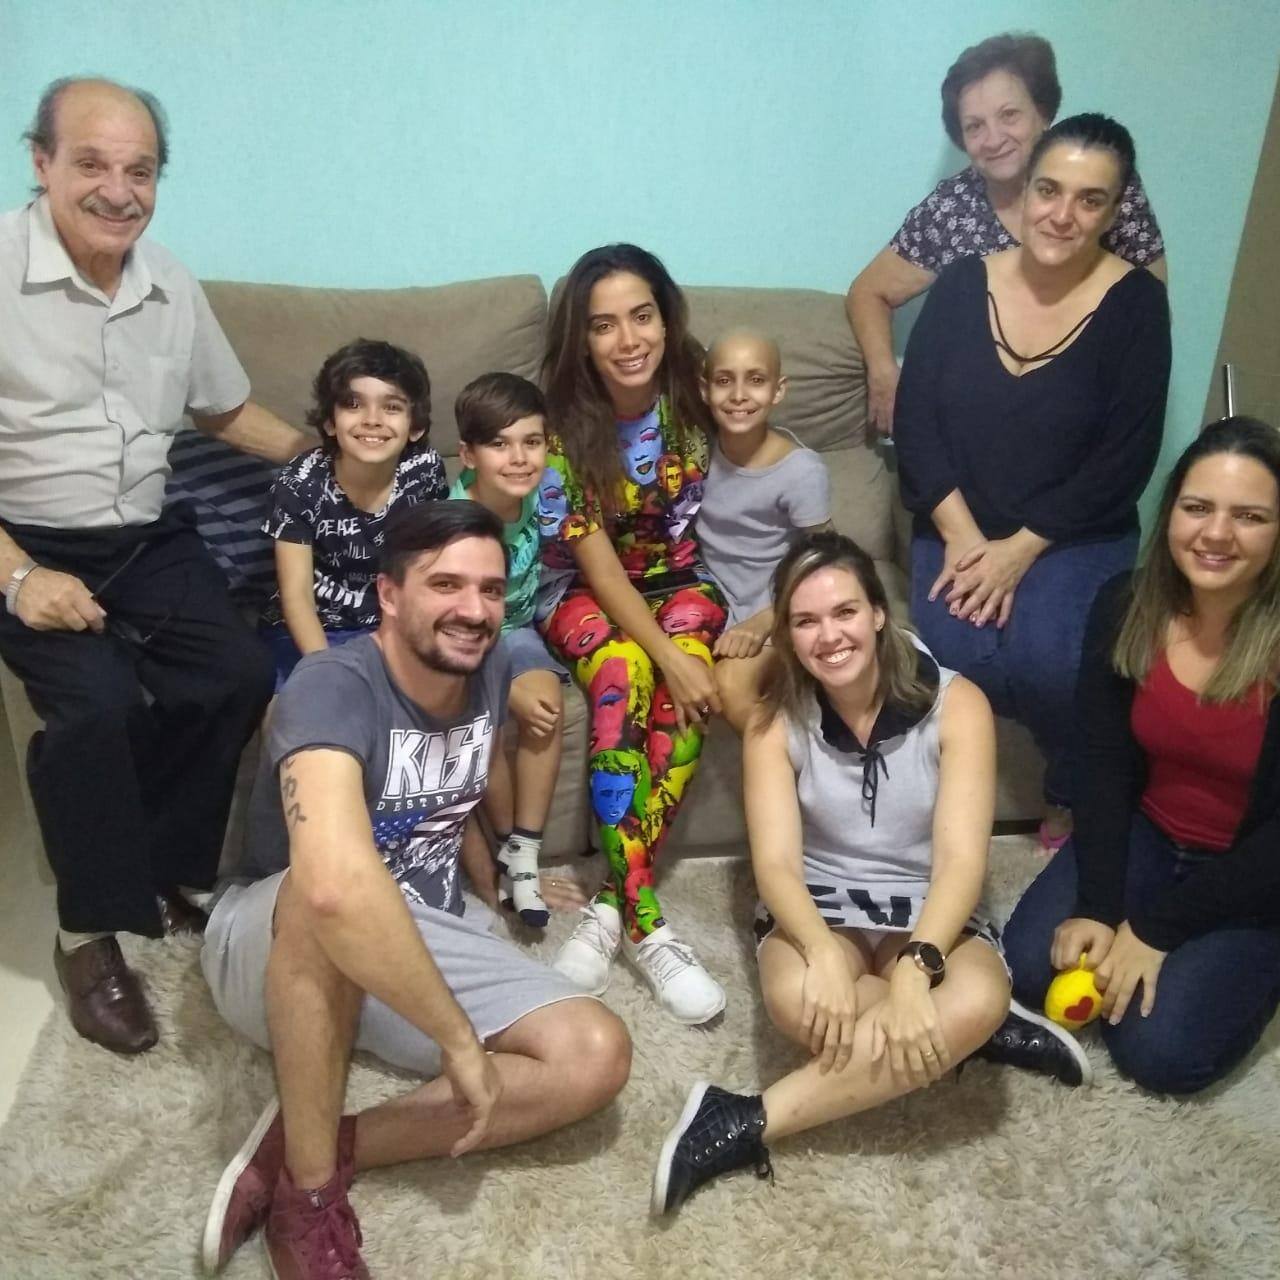 A cantora Anitta visitou uma fã belo-horizontina que passou por transplante de medula em São Paulo